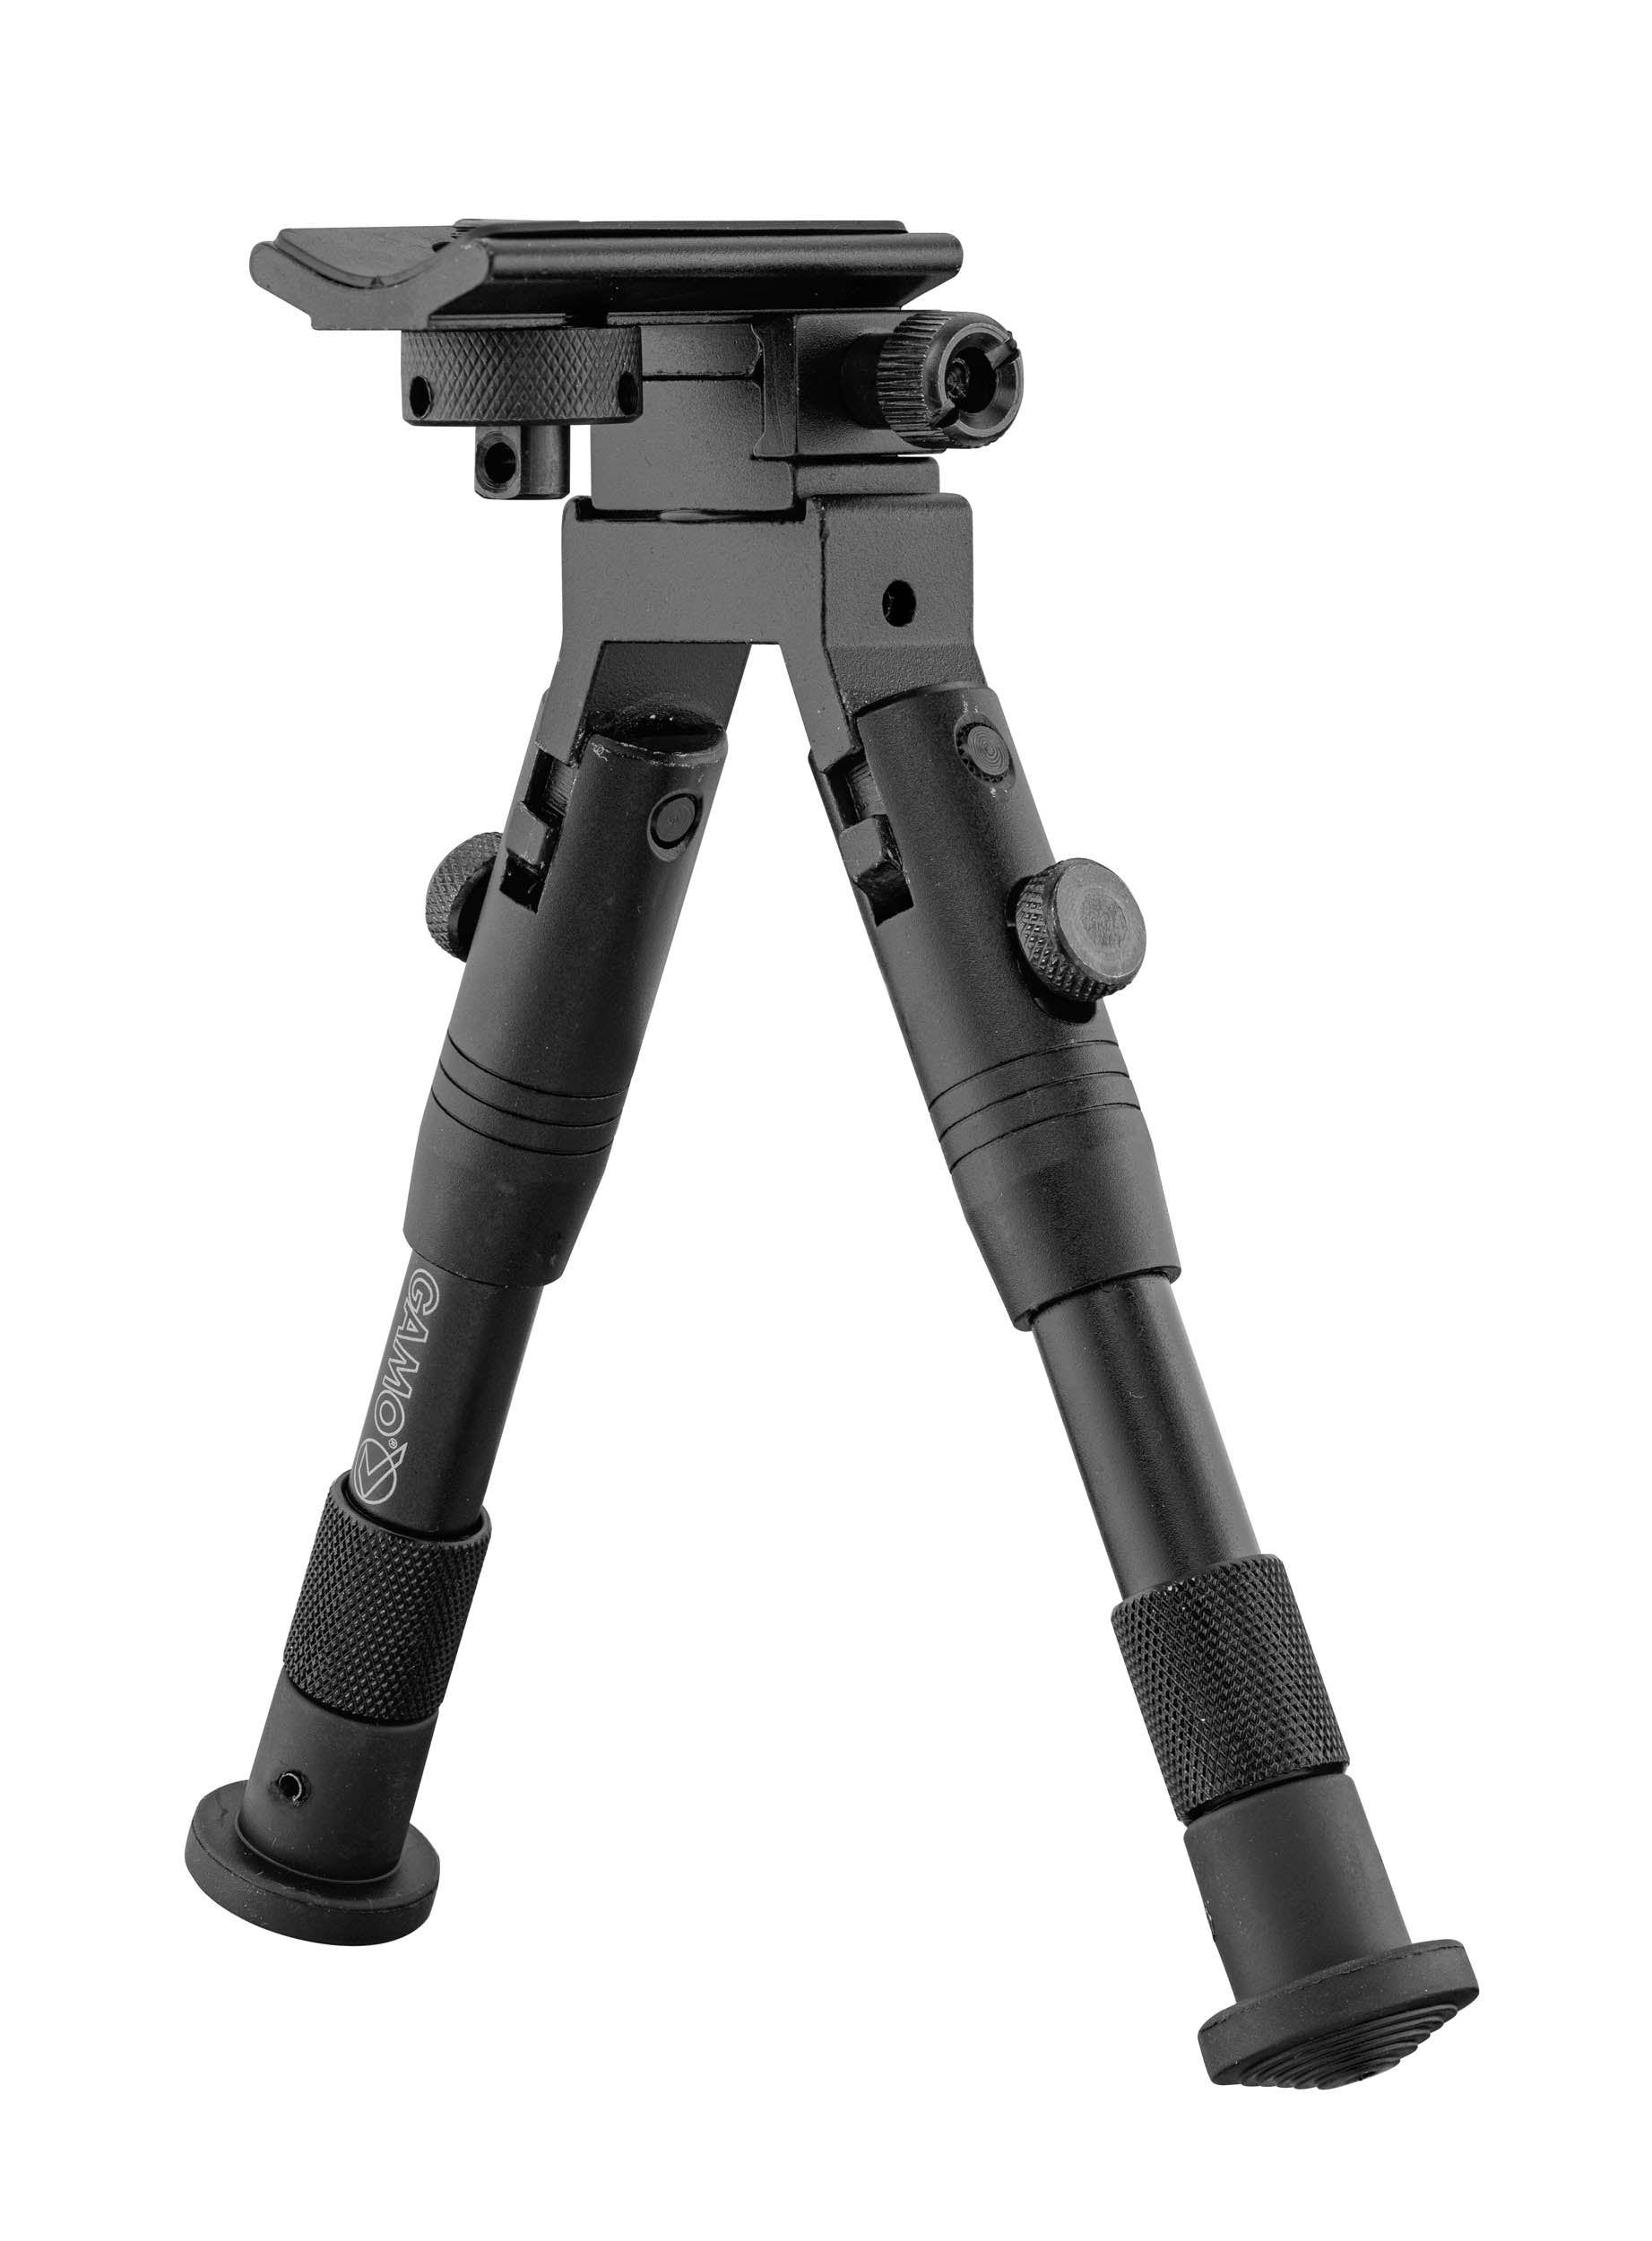 Carabine GAMO HPA IGT avec lunette 3-9x40 WR et bi-pied +